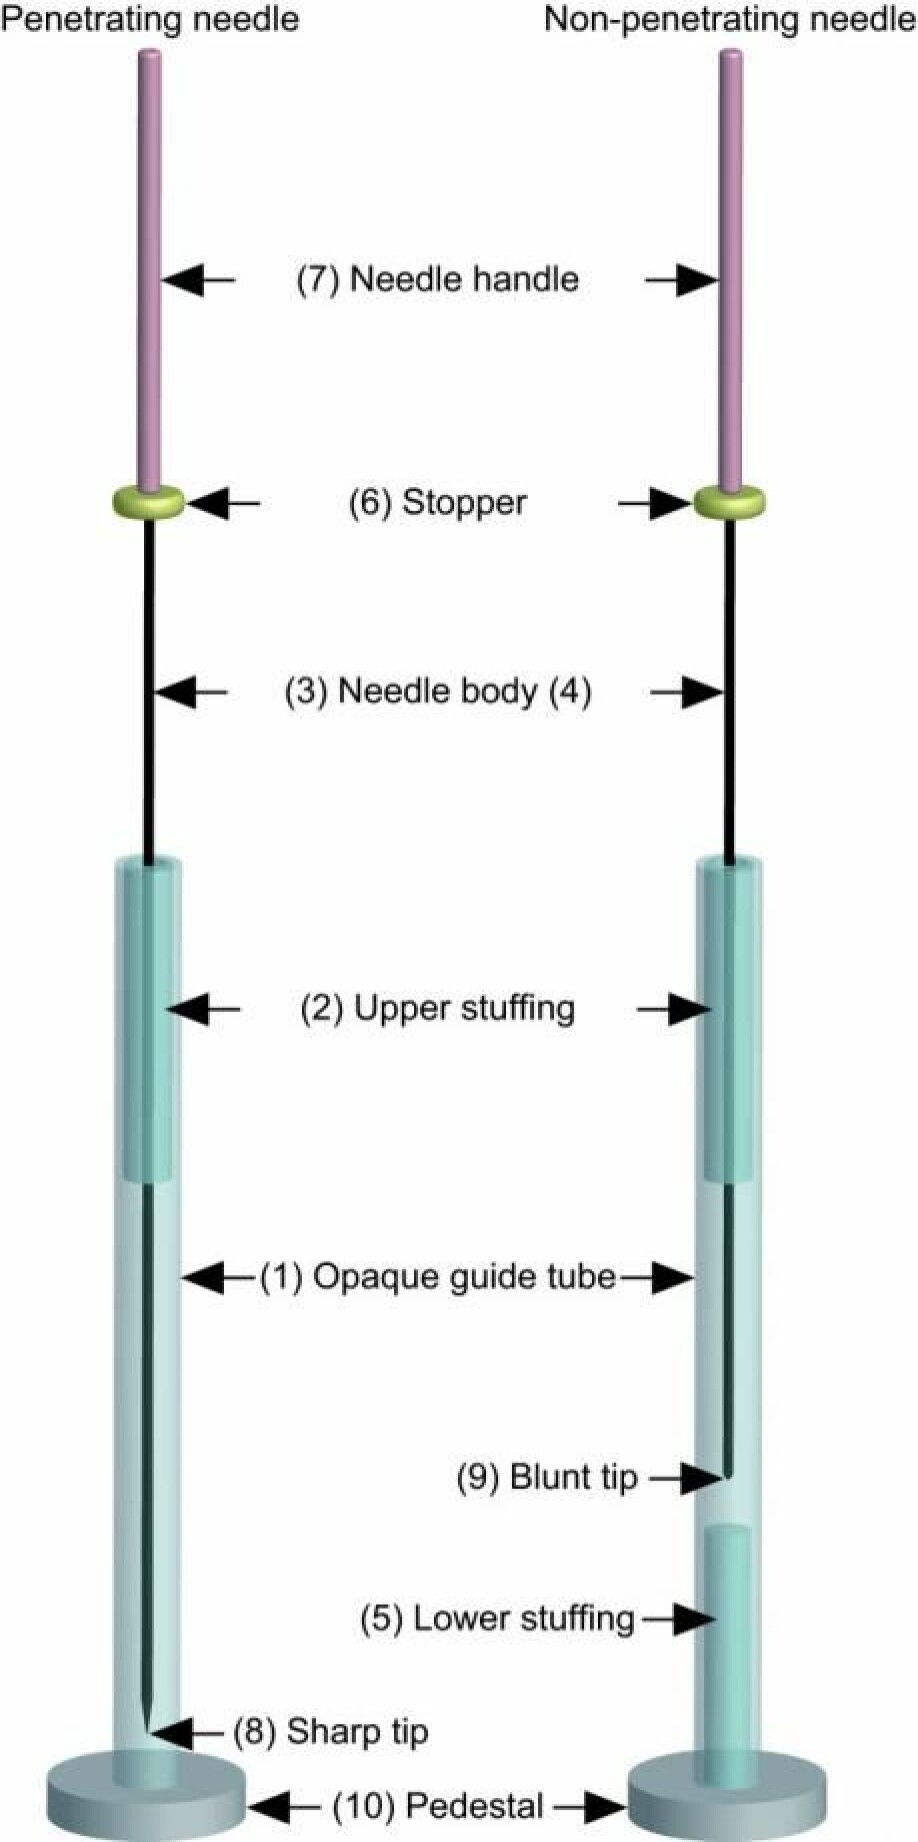 Takakura-nålen skjuler om nålen går inn i pasienten eller en liten pute inne i røret. (Illustrasjon: Takakura et al.)